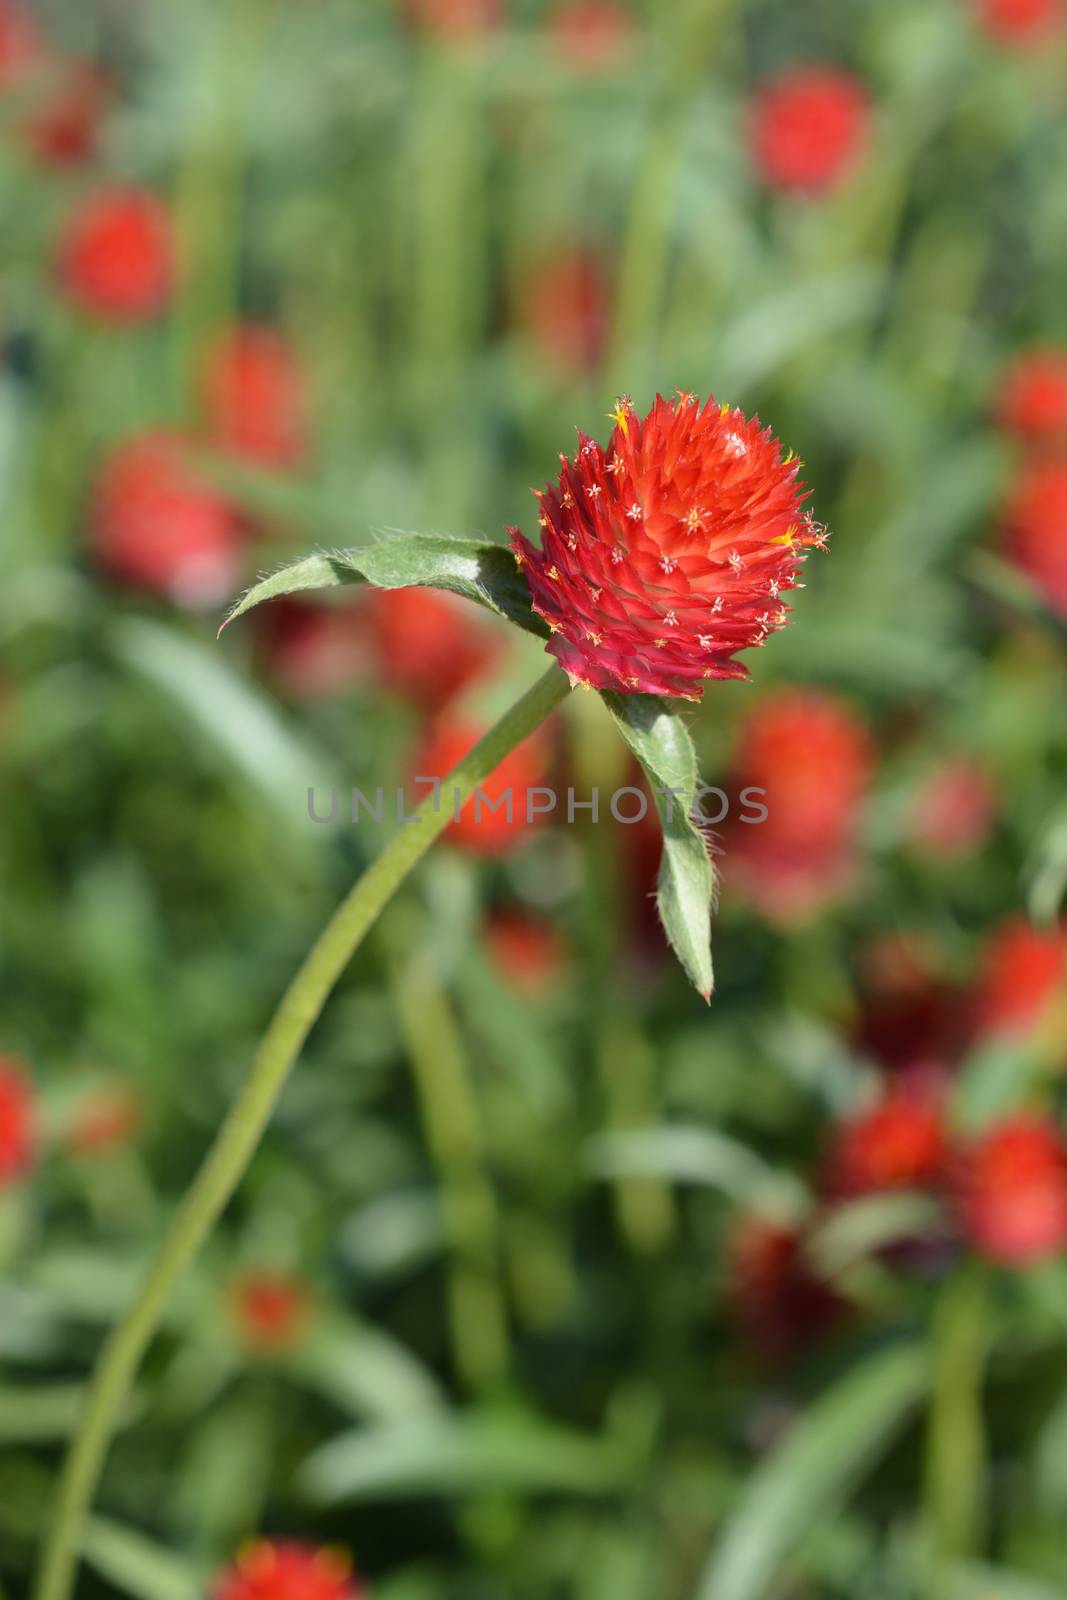 Red globe amaranth - Latin name - Gomphrena globosa Rubra